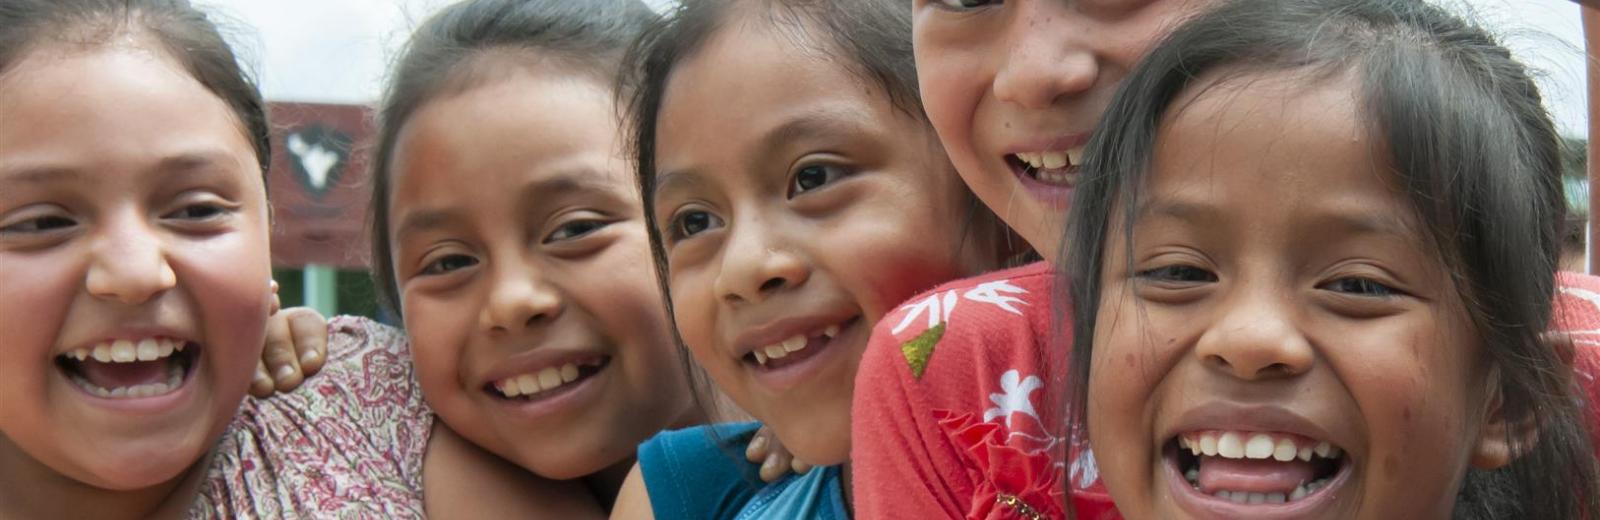 Fünf lachende Mädchen in Guatemala